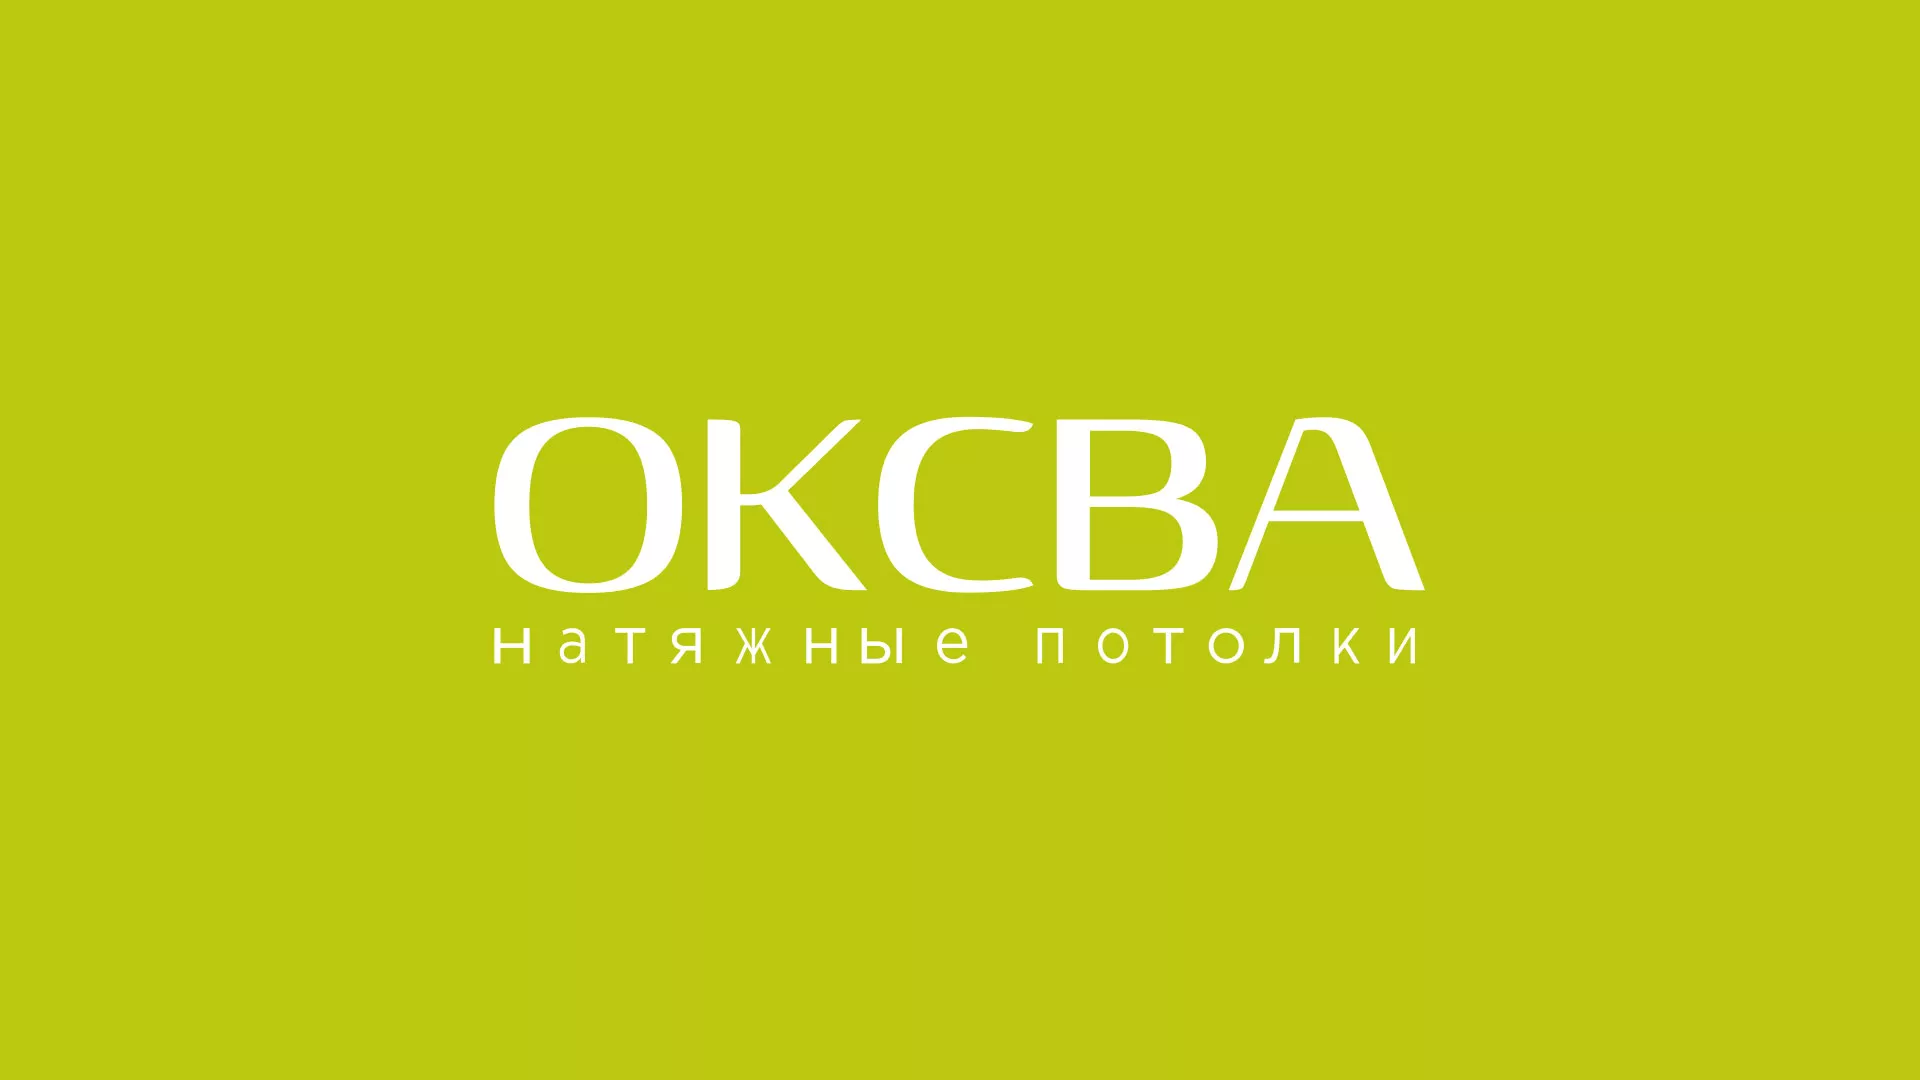 Создание сайта по продаже натяжных потолков для компании «ОКСВА» в Выксе